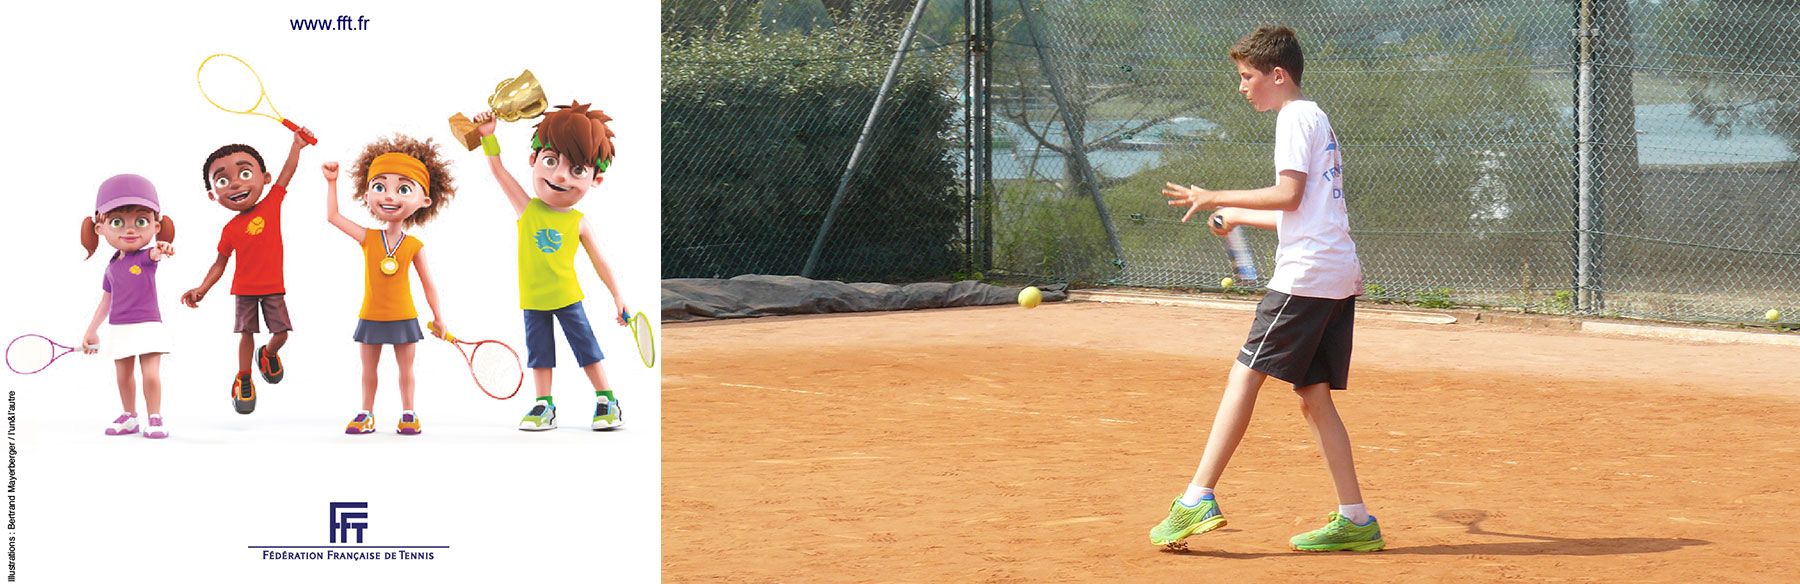 Joueur de tennis sur terre battue et dessins galaxie tennis.